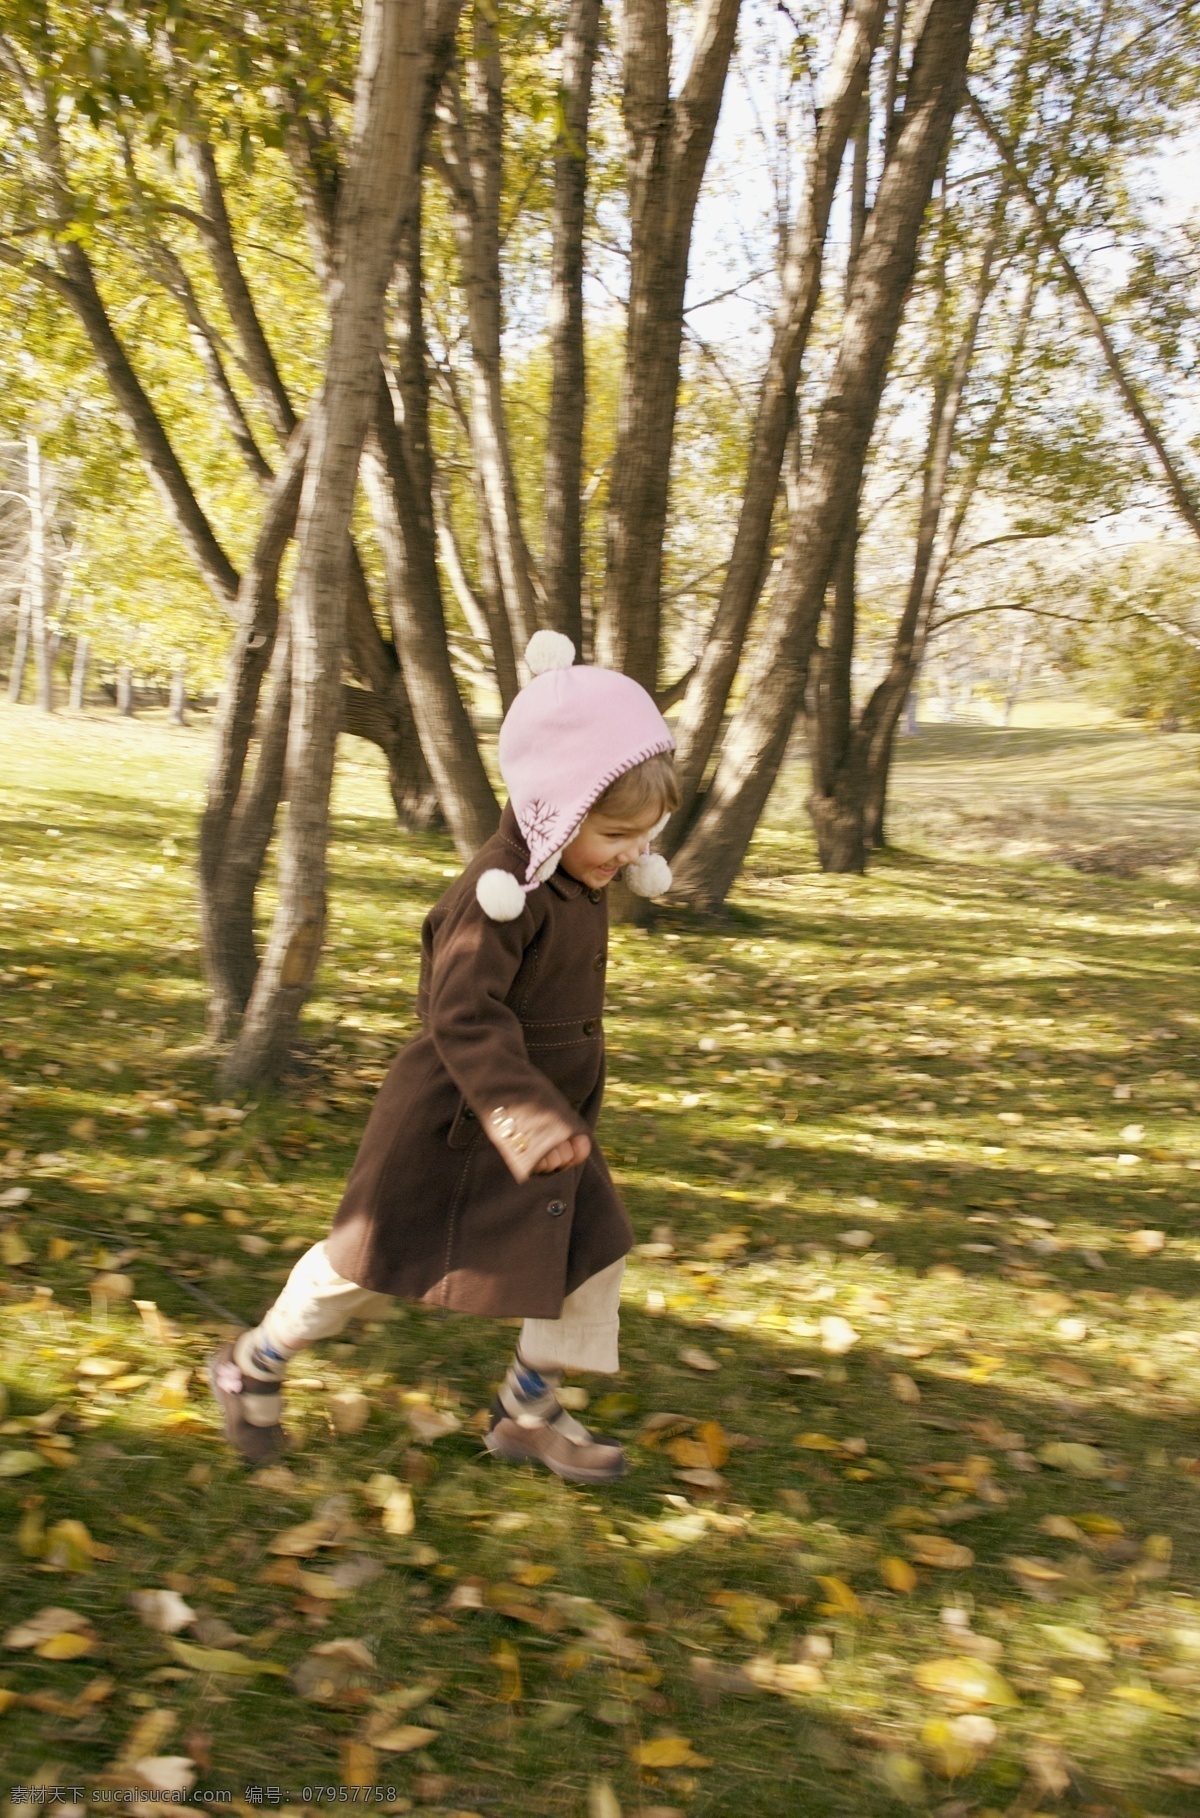 野外 玩耍 儿童 树林 树叶 草地 女孩 田野 郊区 人物 人物摄影 人物素材 职业人物 生活人物 人物图片